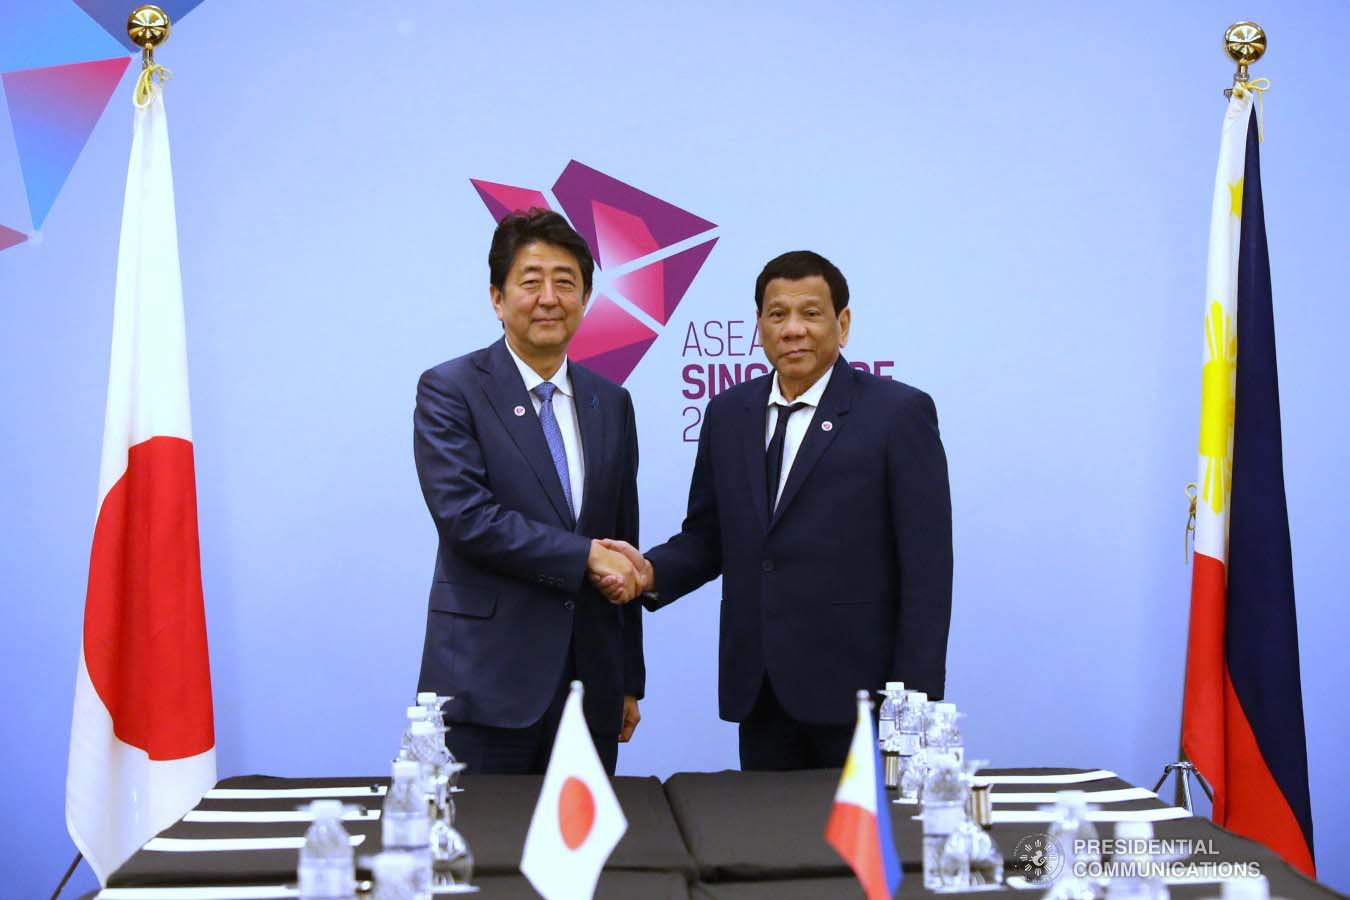 Tổng thống Philippines Rodrigo Duterte (phải) và Thủ tướng Nhật Bản Shinzo Abe(trái). Ảnh: mb.com.ph